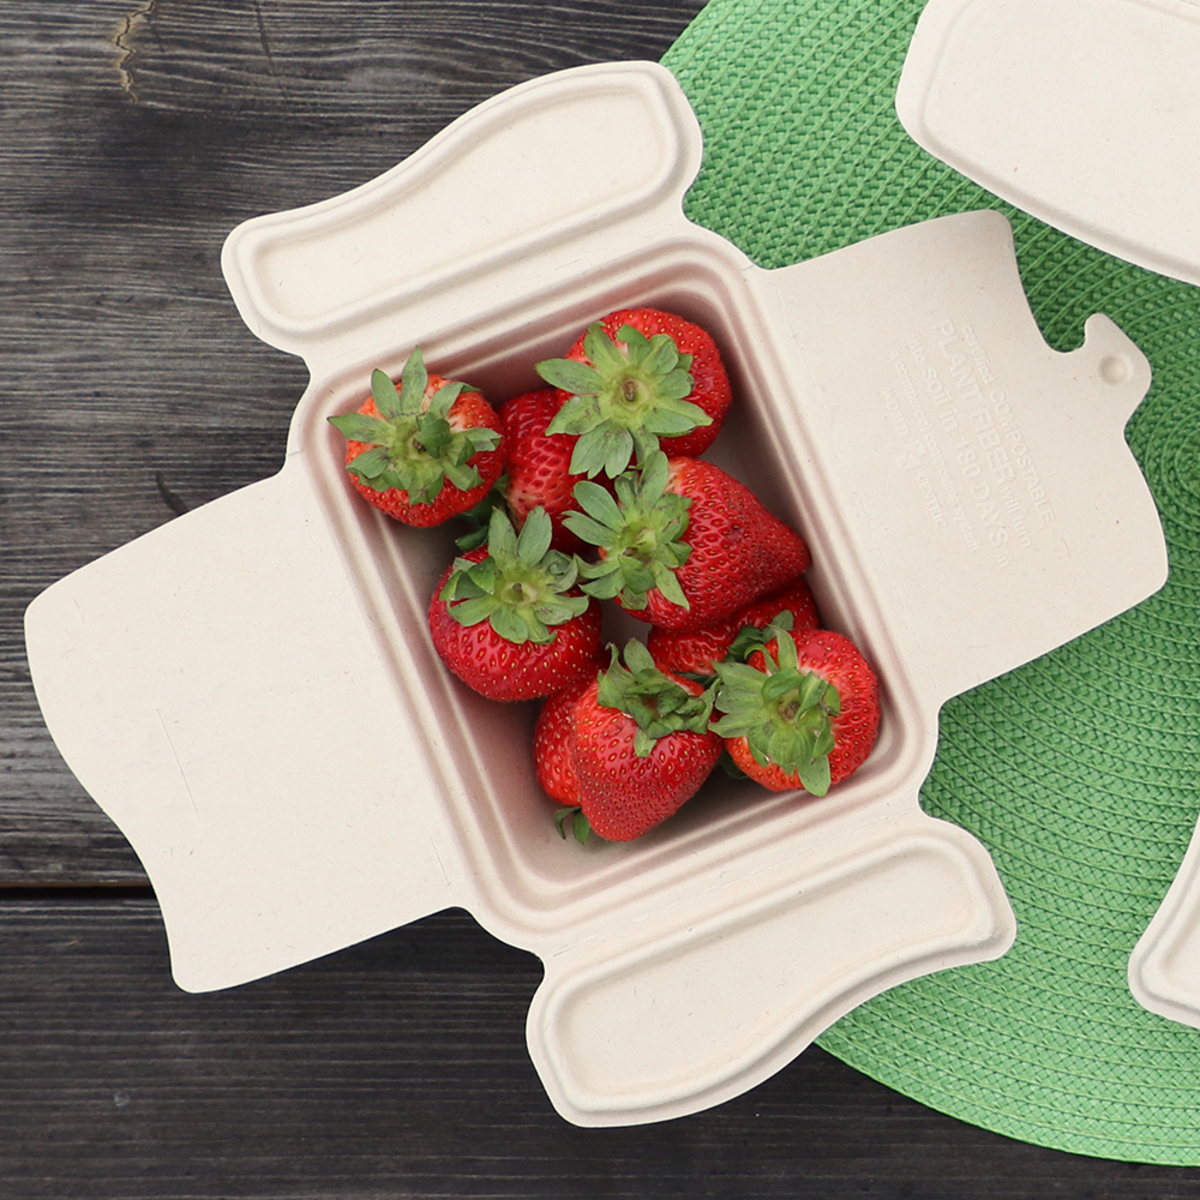 24oz Fiber COMPOST-A-PAK filled with strawberries.